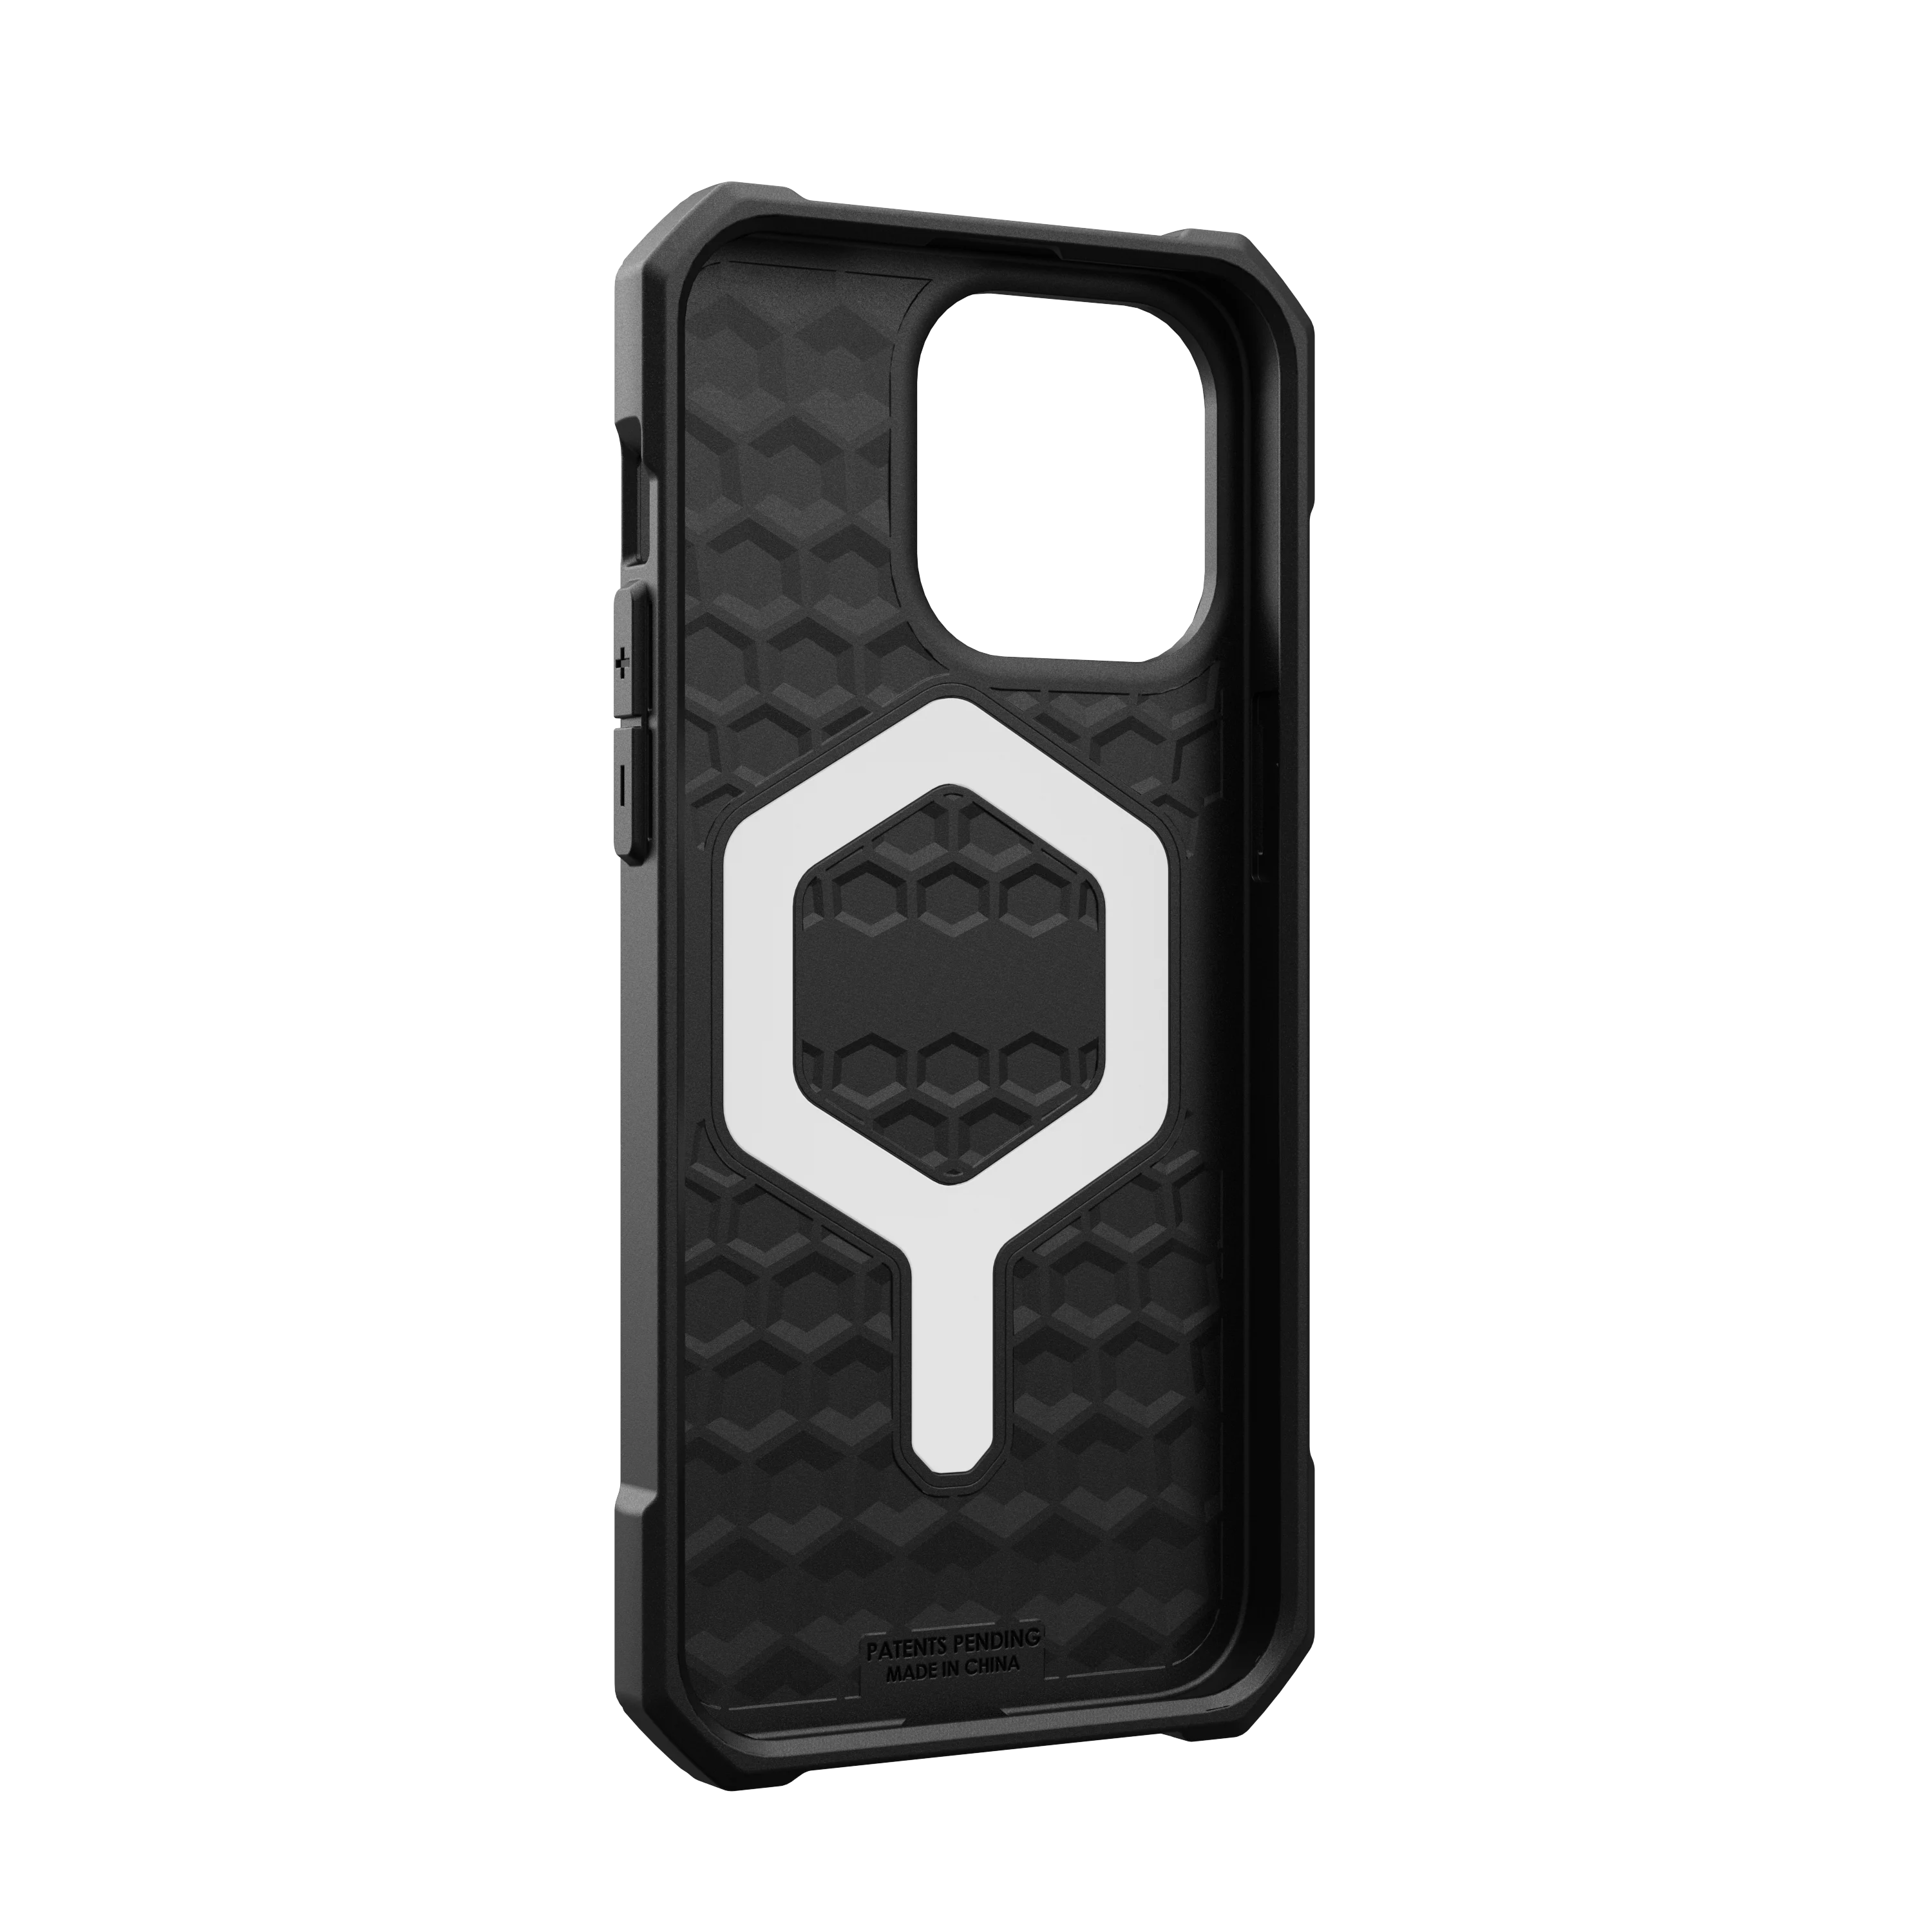 iPhone 15 Pro Max Essential Armor MagSafe Case Black